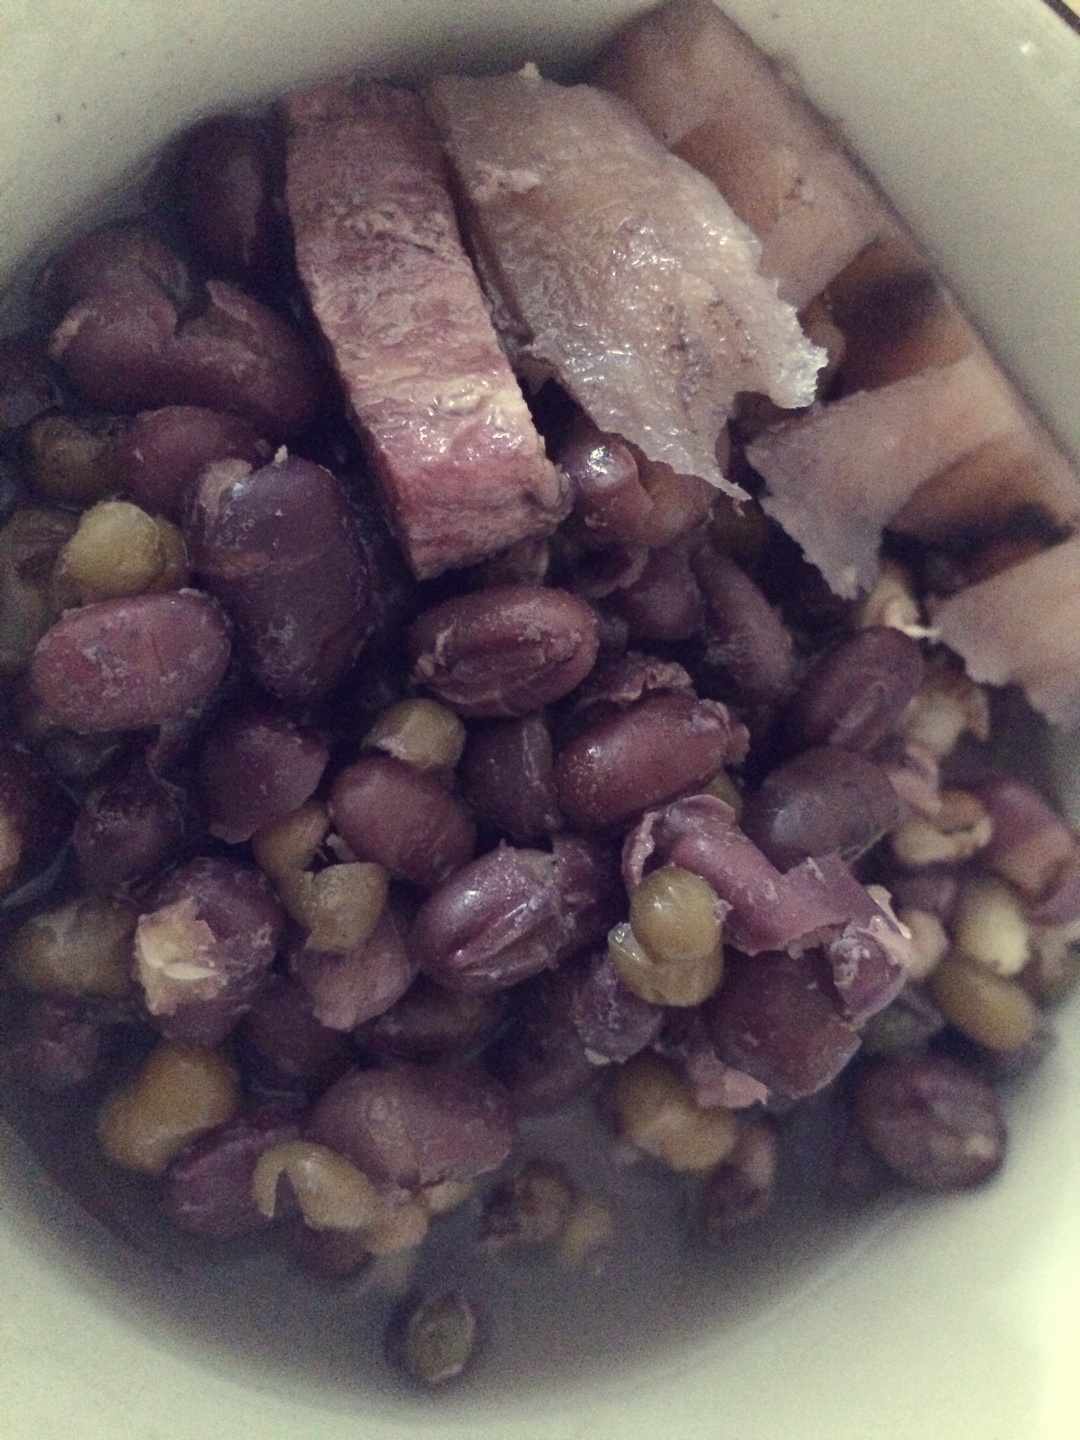 红豆莲藕牛肉汤的做法